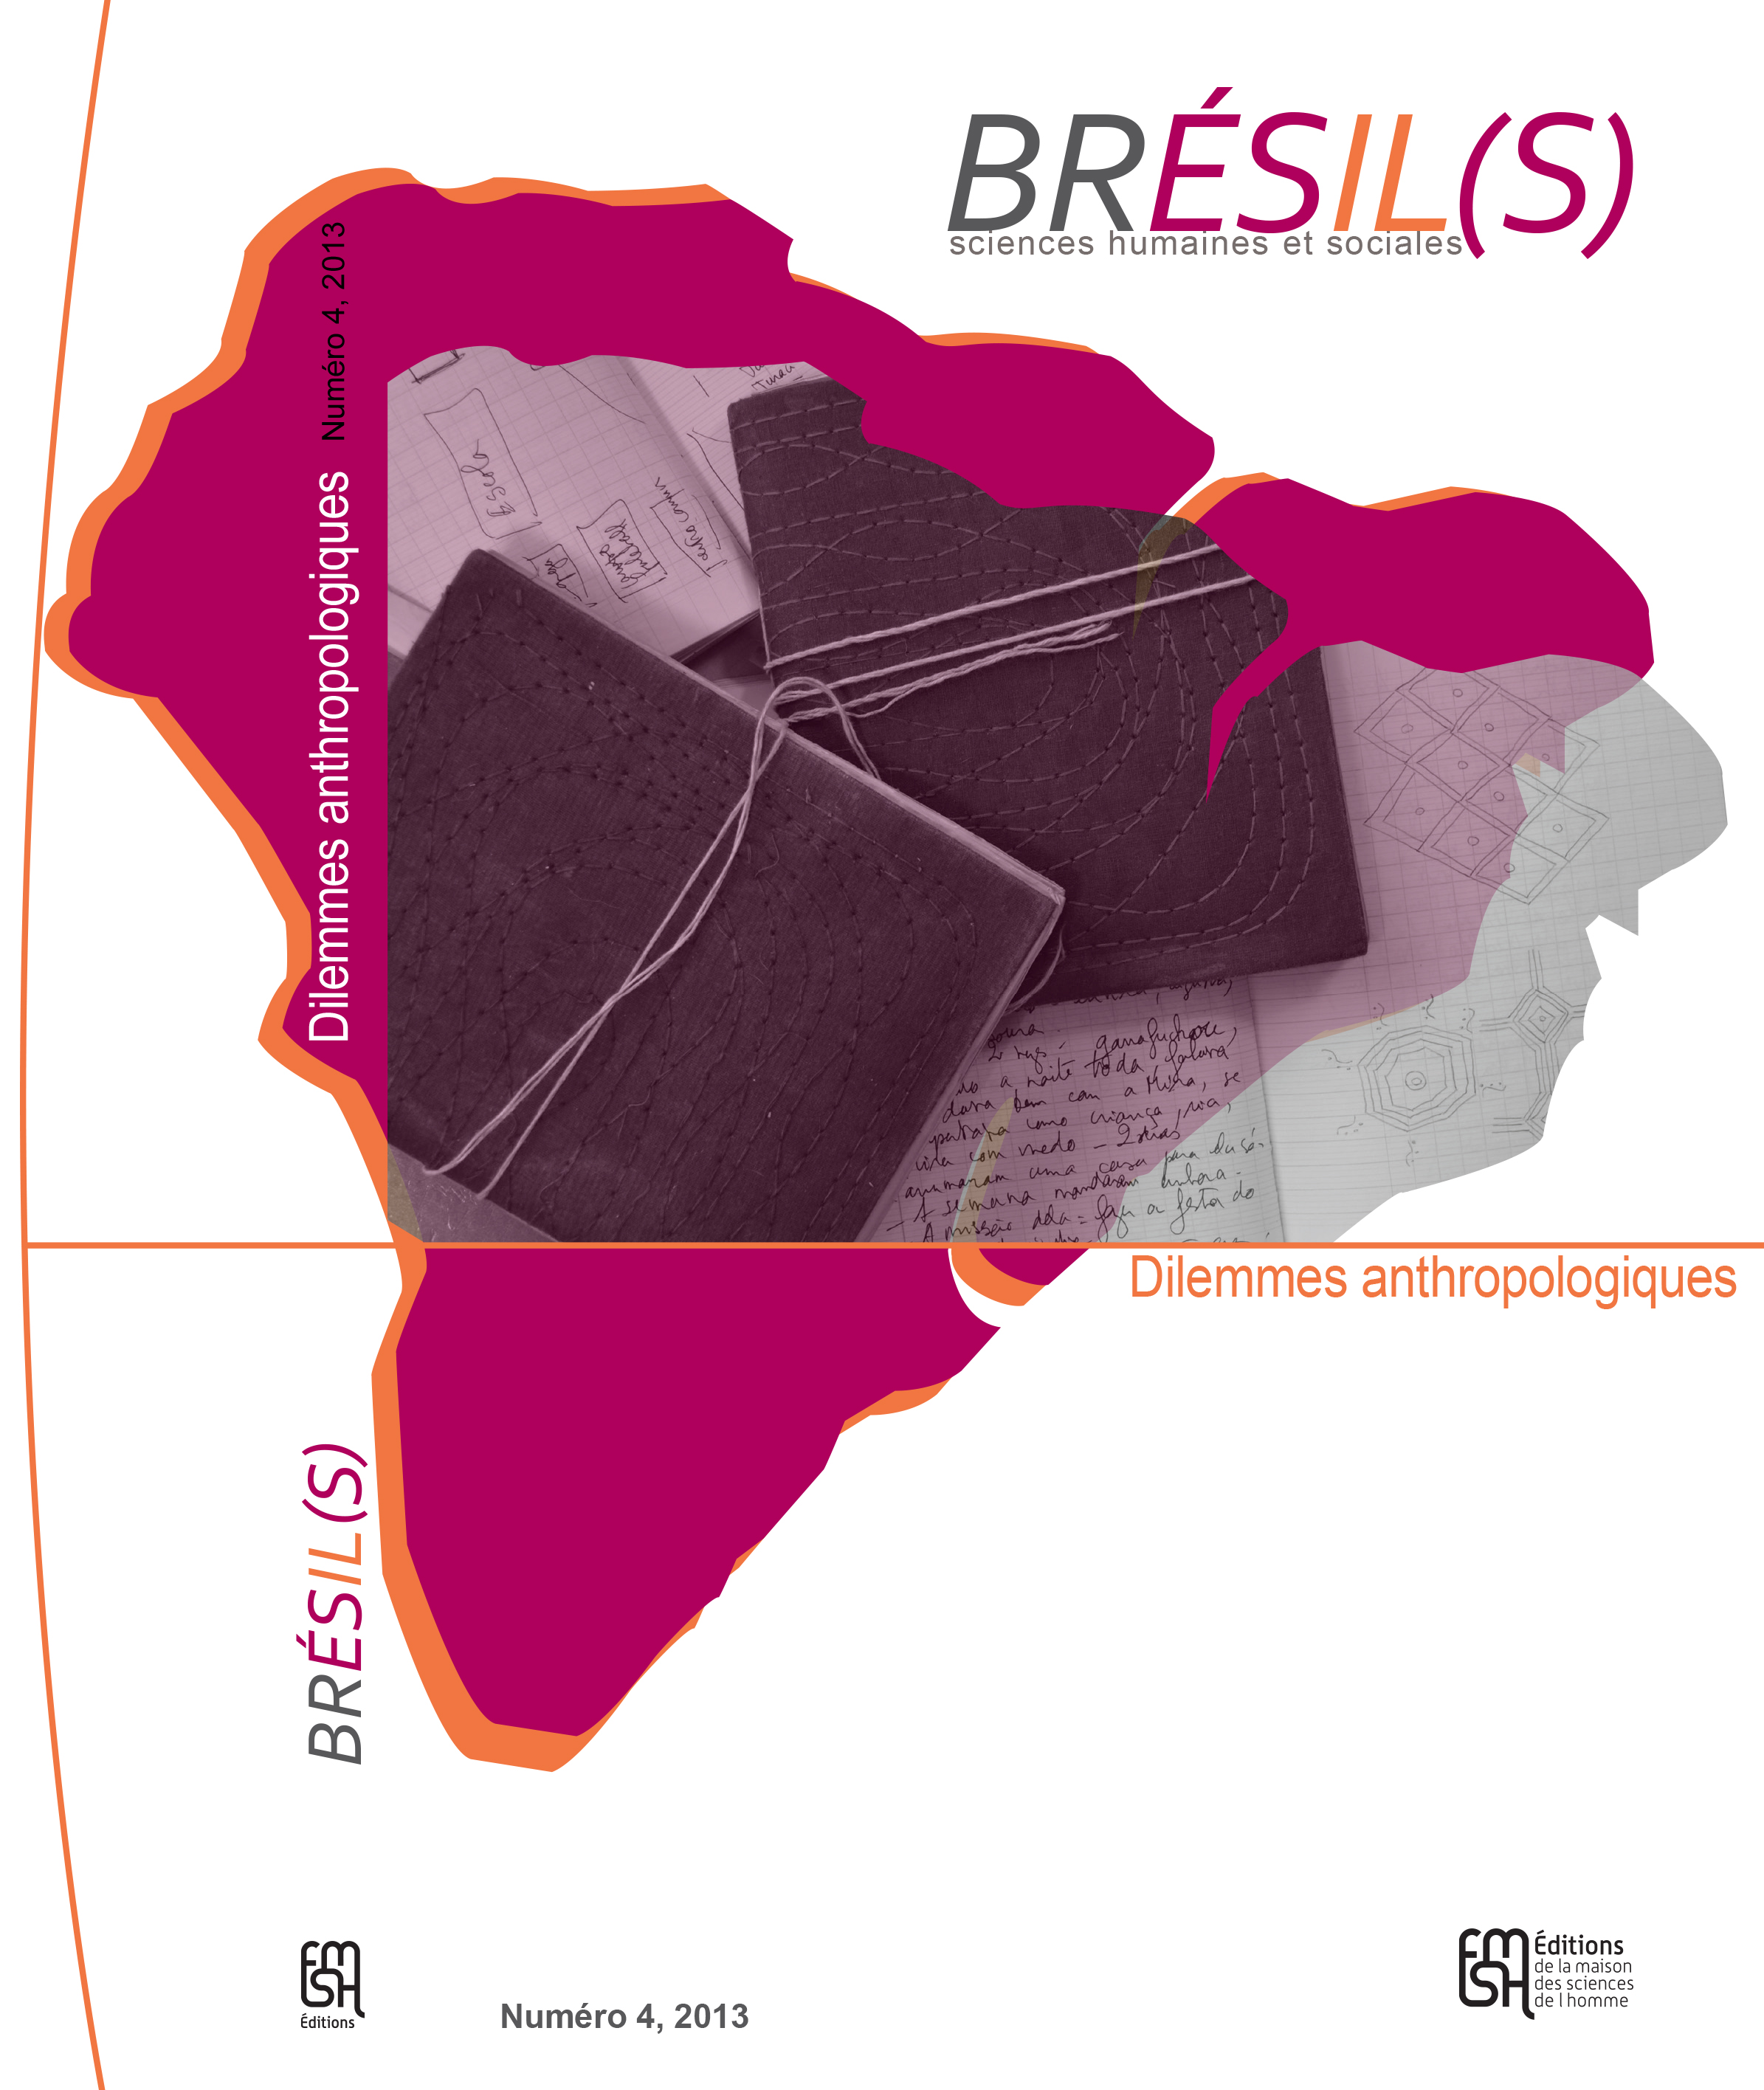 Dilemmes anthropologiques, le nouveau numéro de Brésil(s)